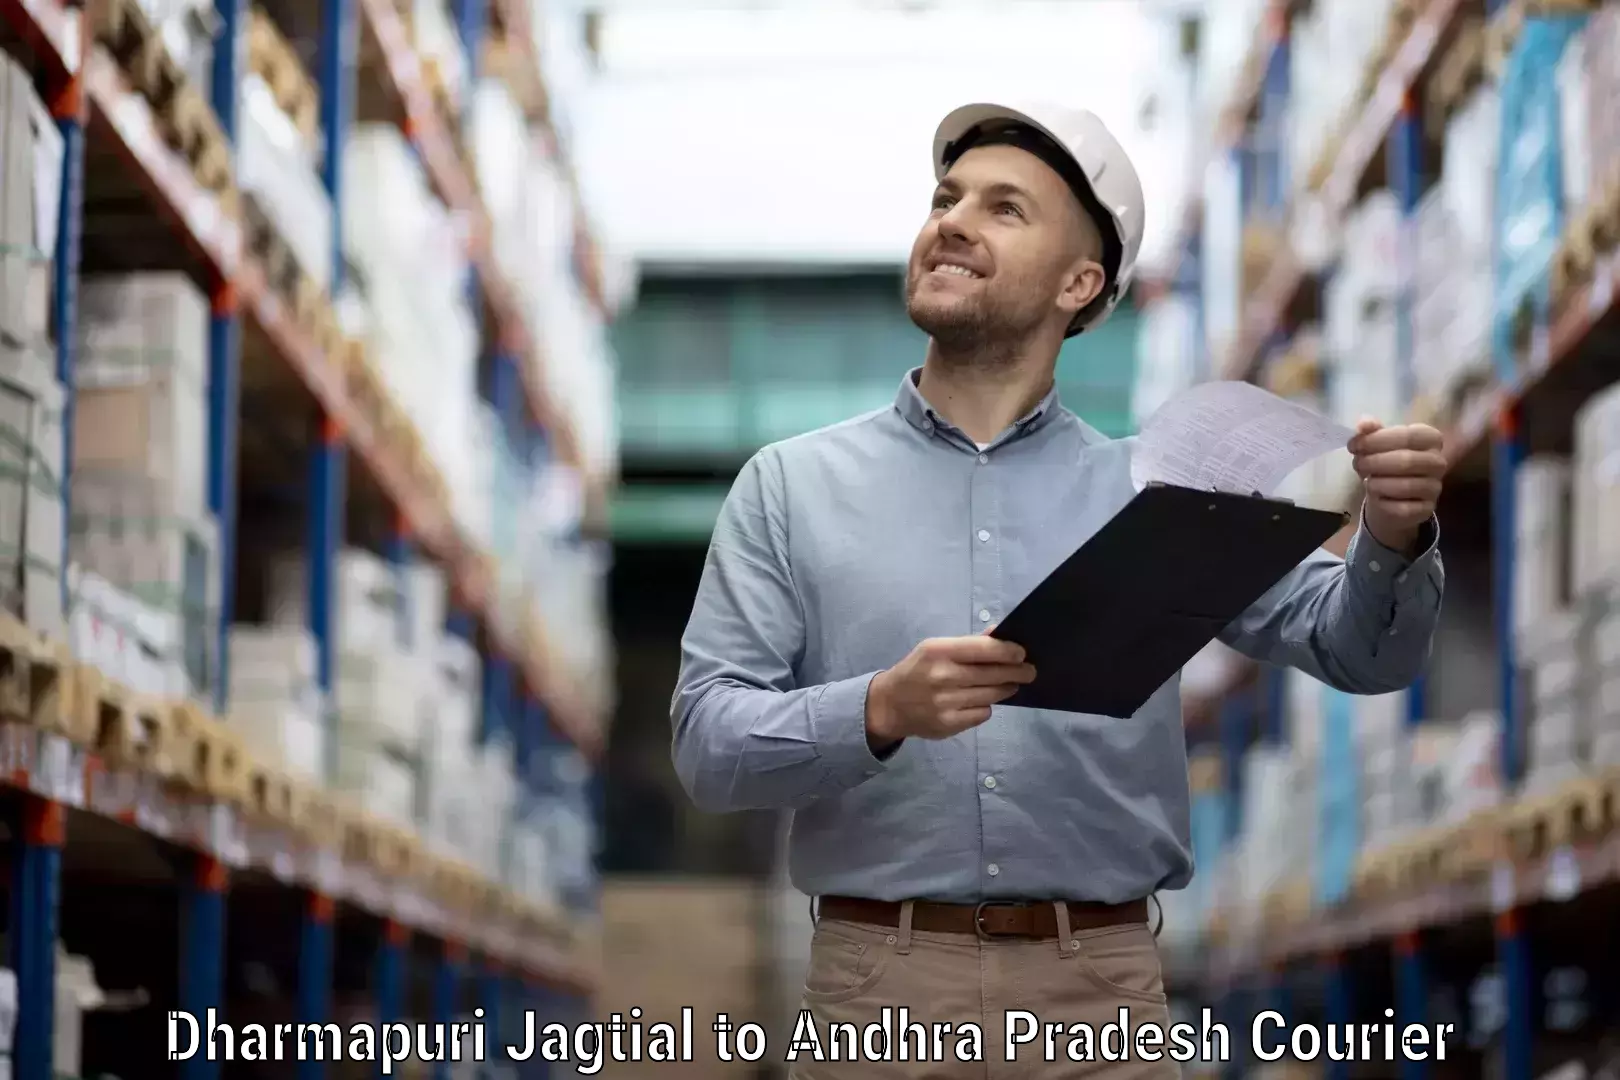 Urgent courier needs Dharmapuri Jagtial to Andhra Pradesh